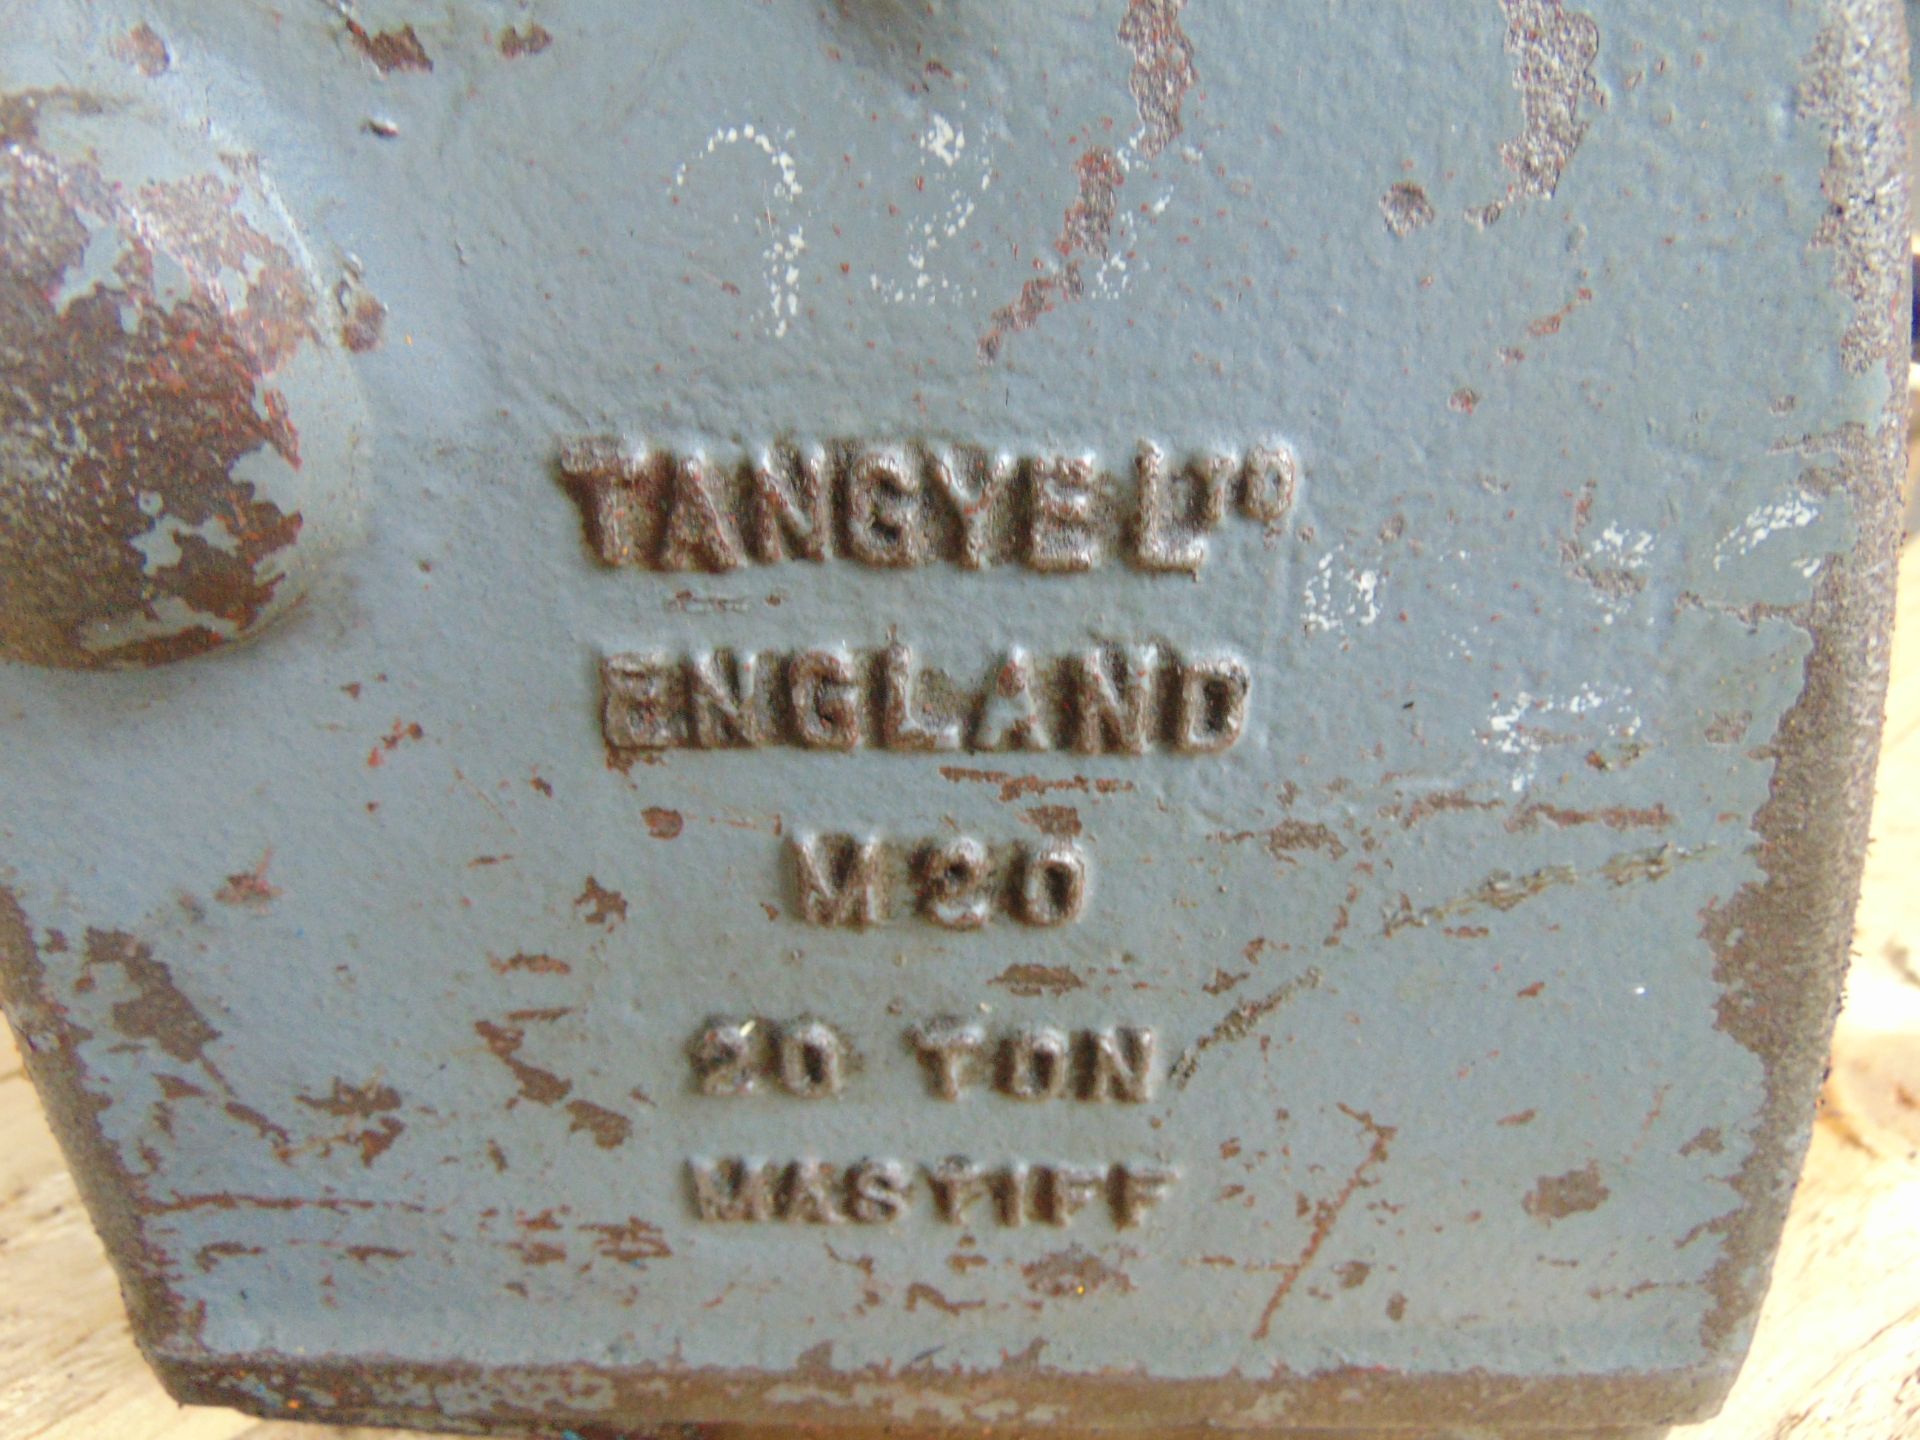 Tangye M20 Mastiff 20 Tonne Hydraulic Jack - Image 5 of 5